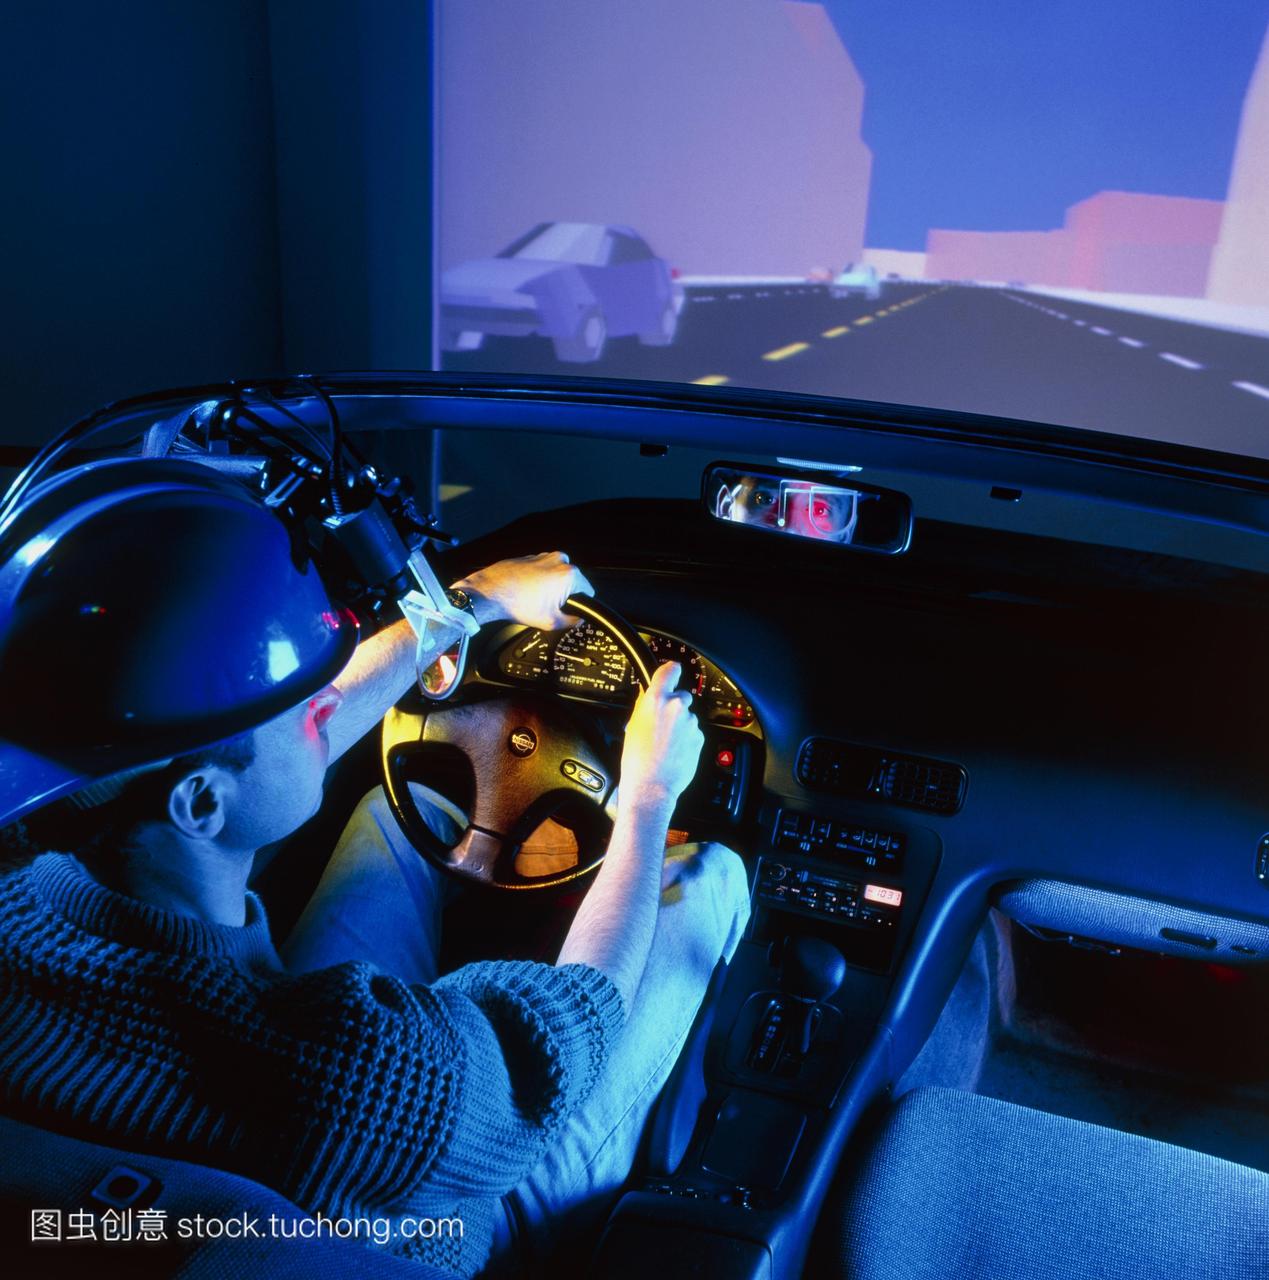 驾驶模拟器。男人在一个虚拟现实driv-ing模拟